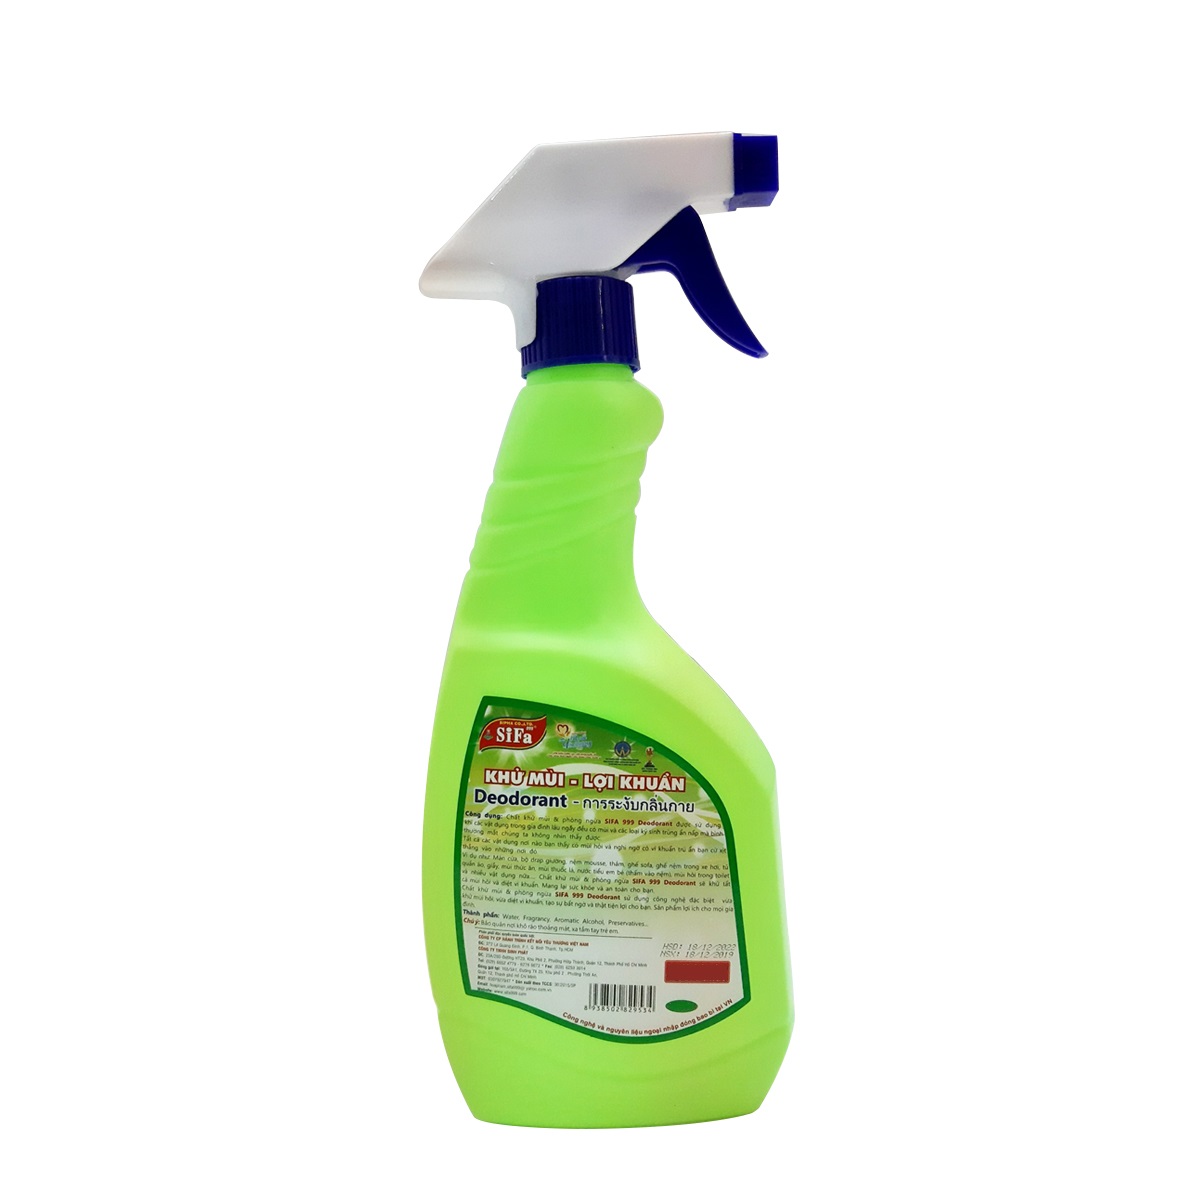 Chất khử mùi lợi khuẩn đồ dùng gia đình và phòng ngừa vi khuẩn Deodorant Sifa cao cấp